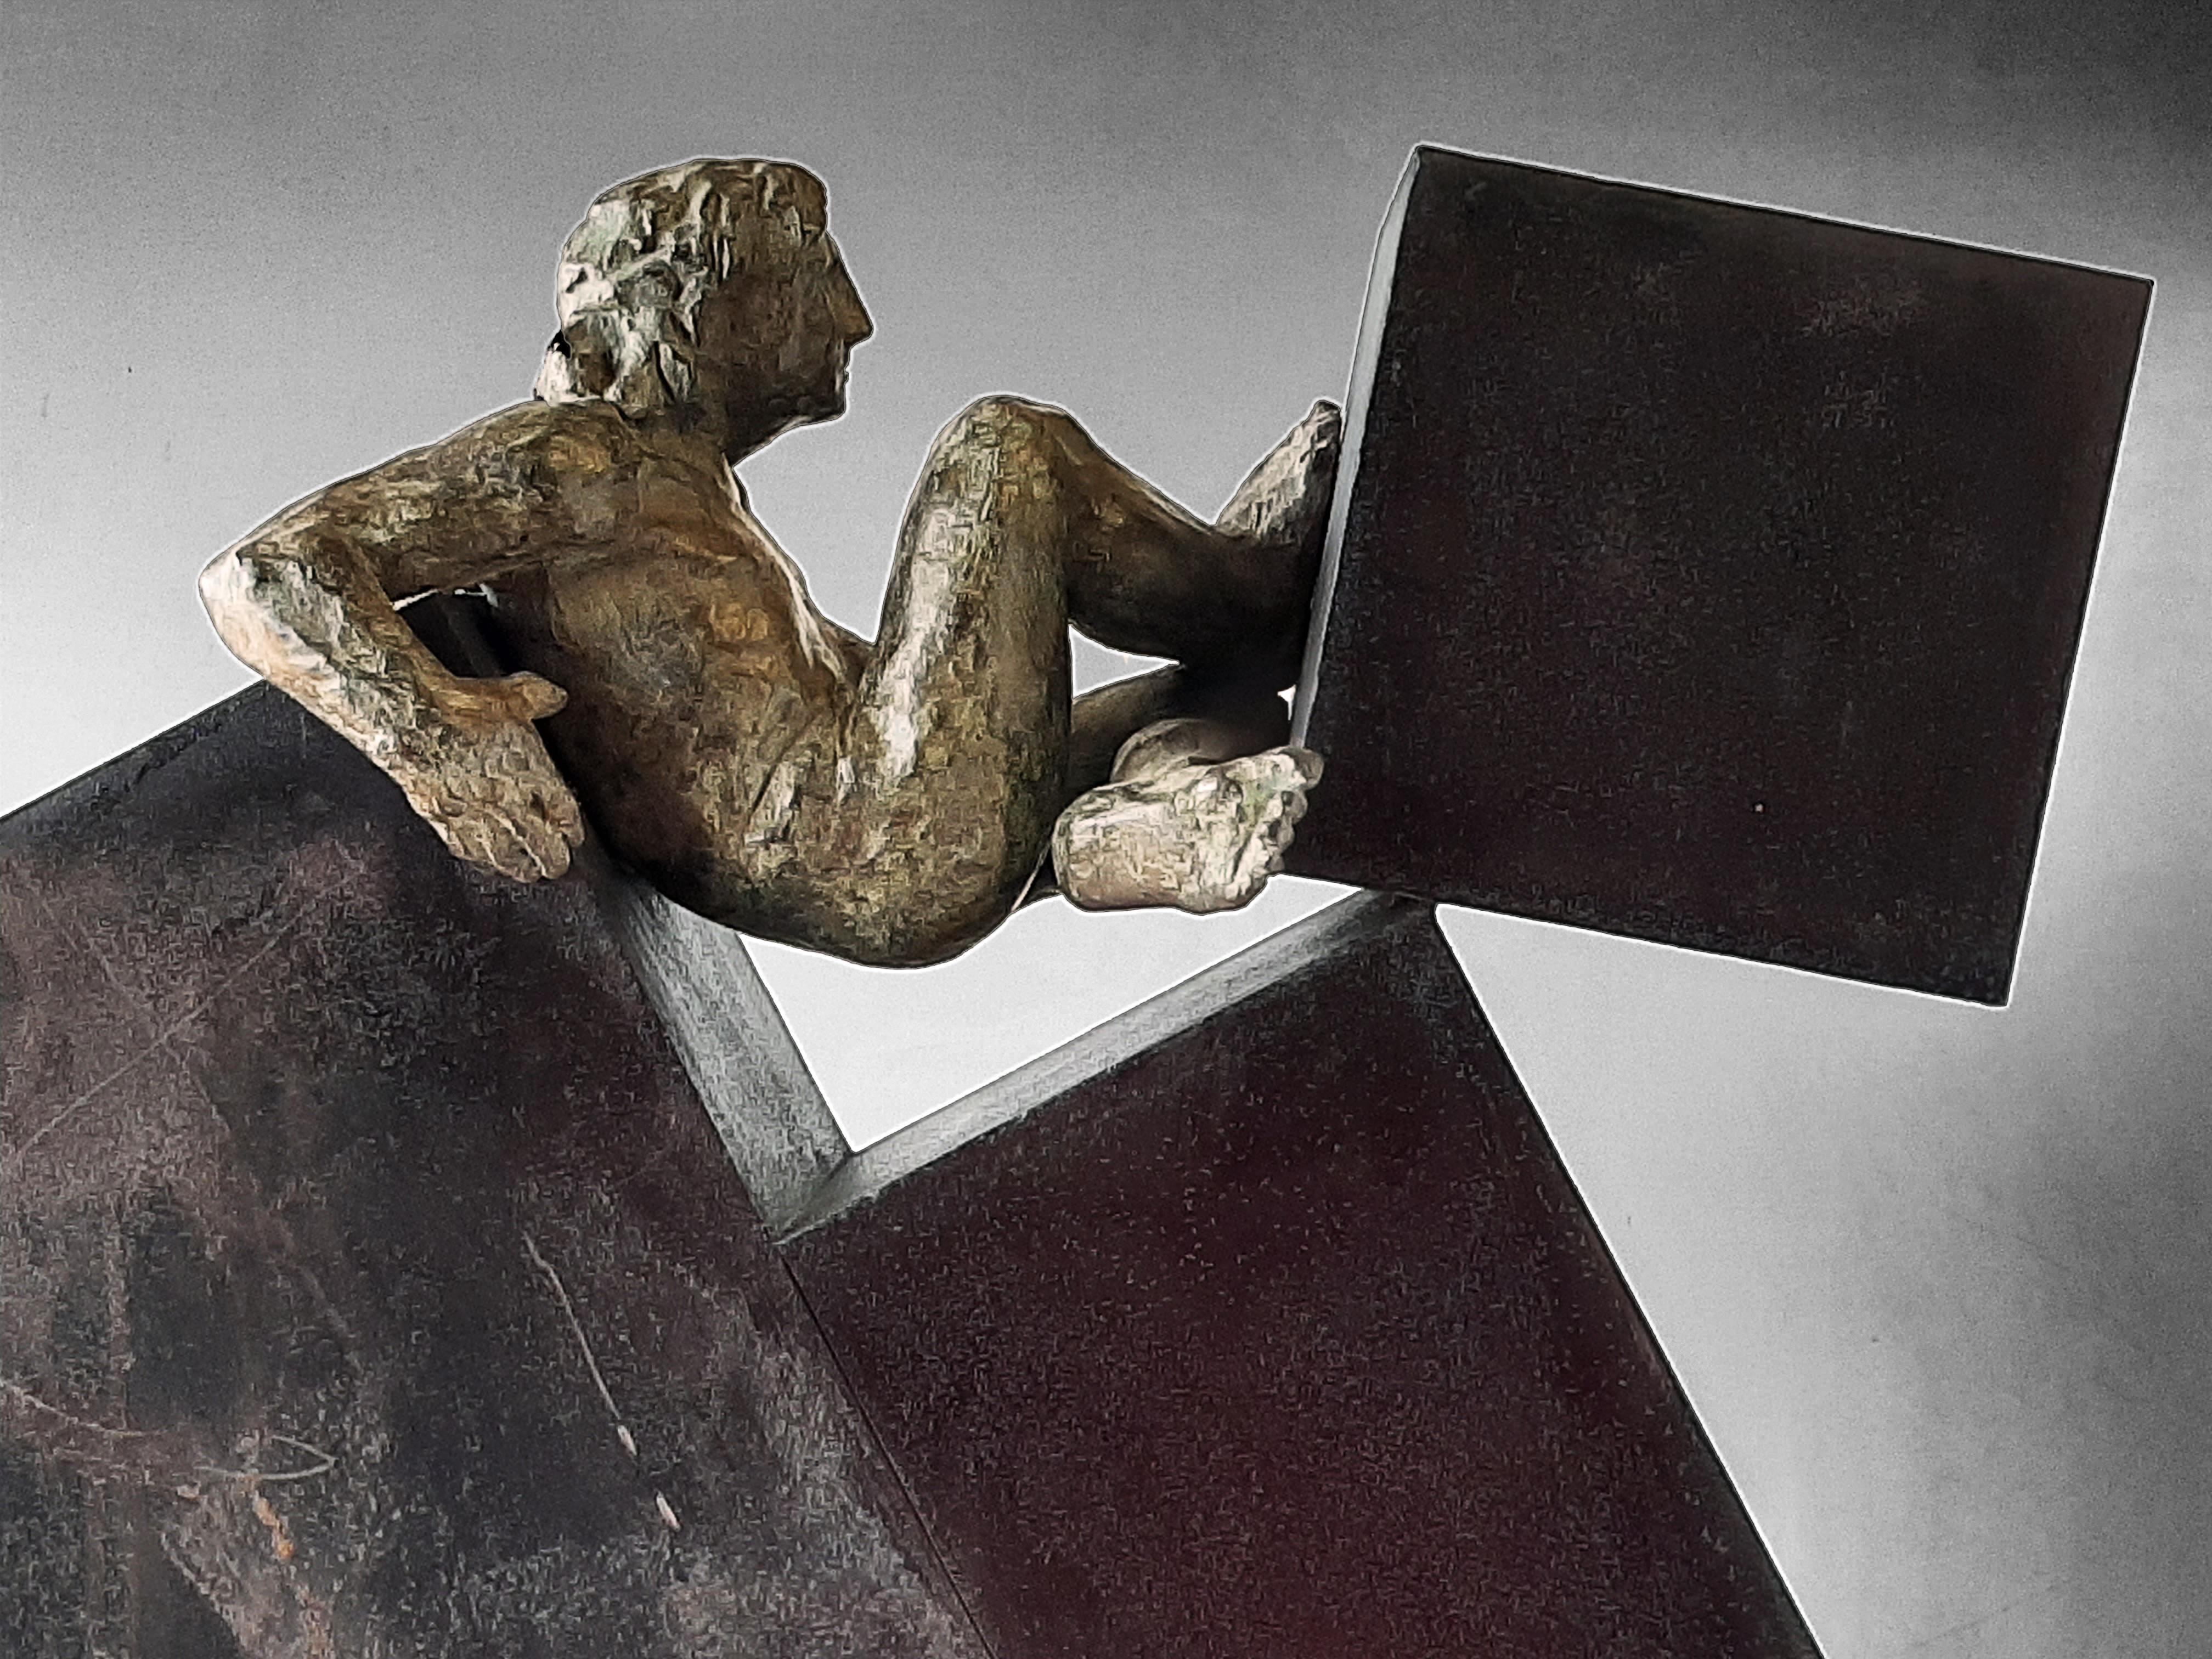 AMANCIO 14 Deconstruccion  III. original sculpture bronze iron - Sculpture by Amancio Gonzalez Morera